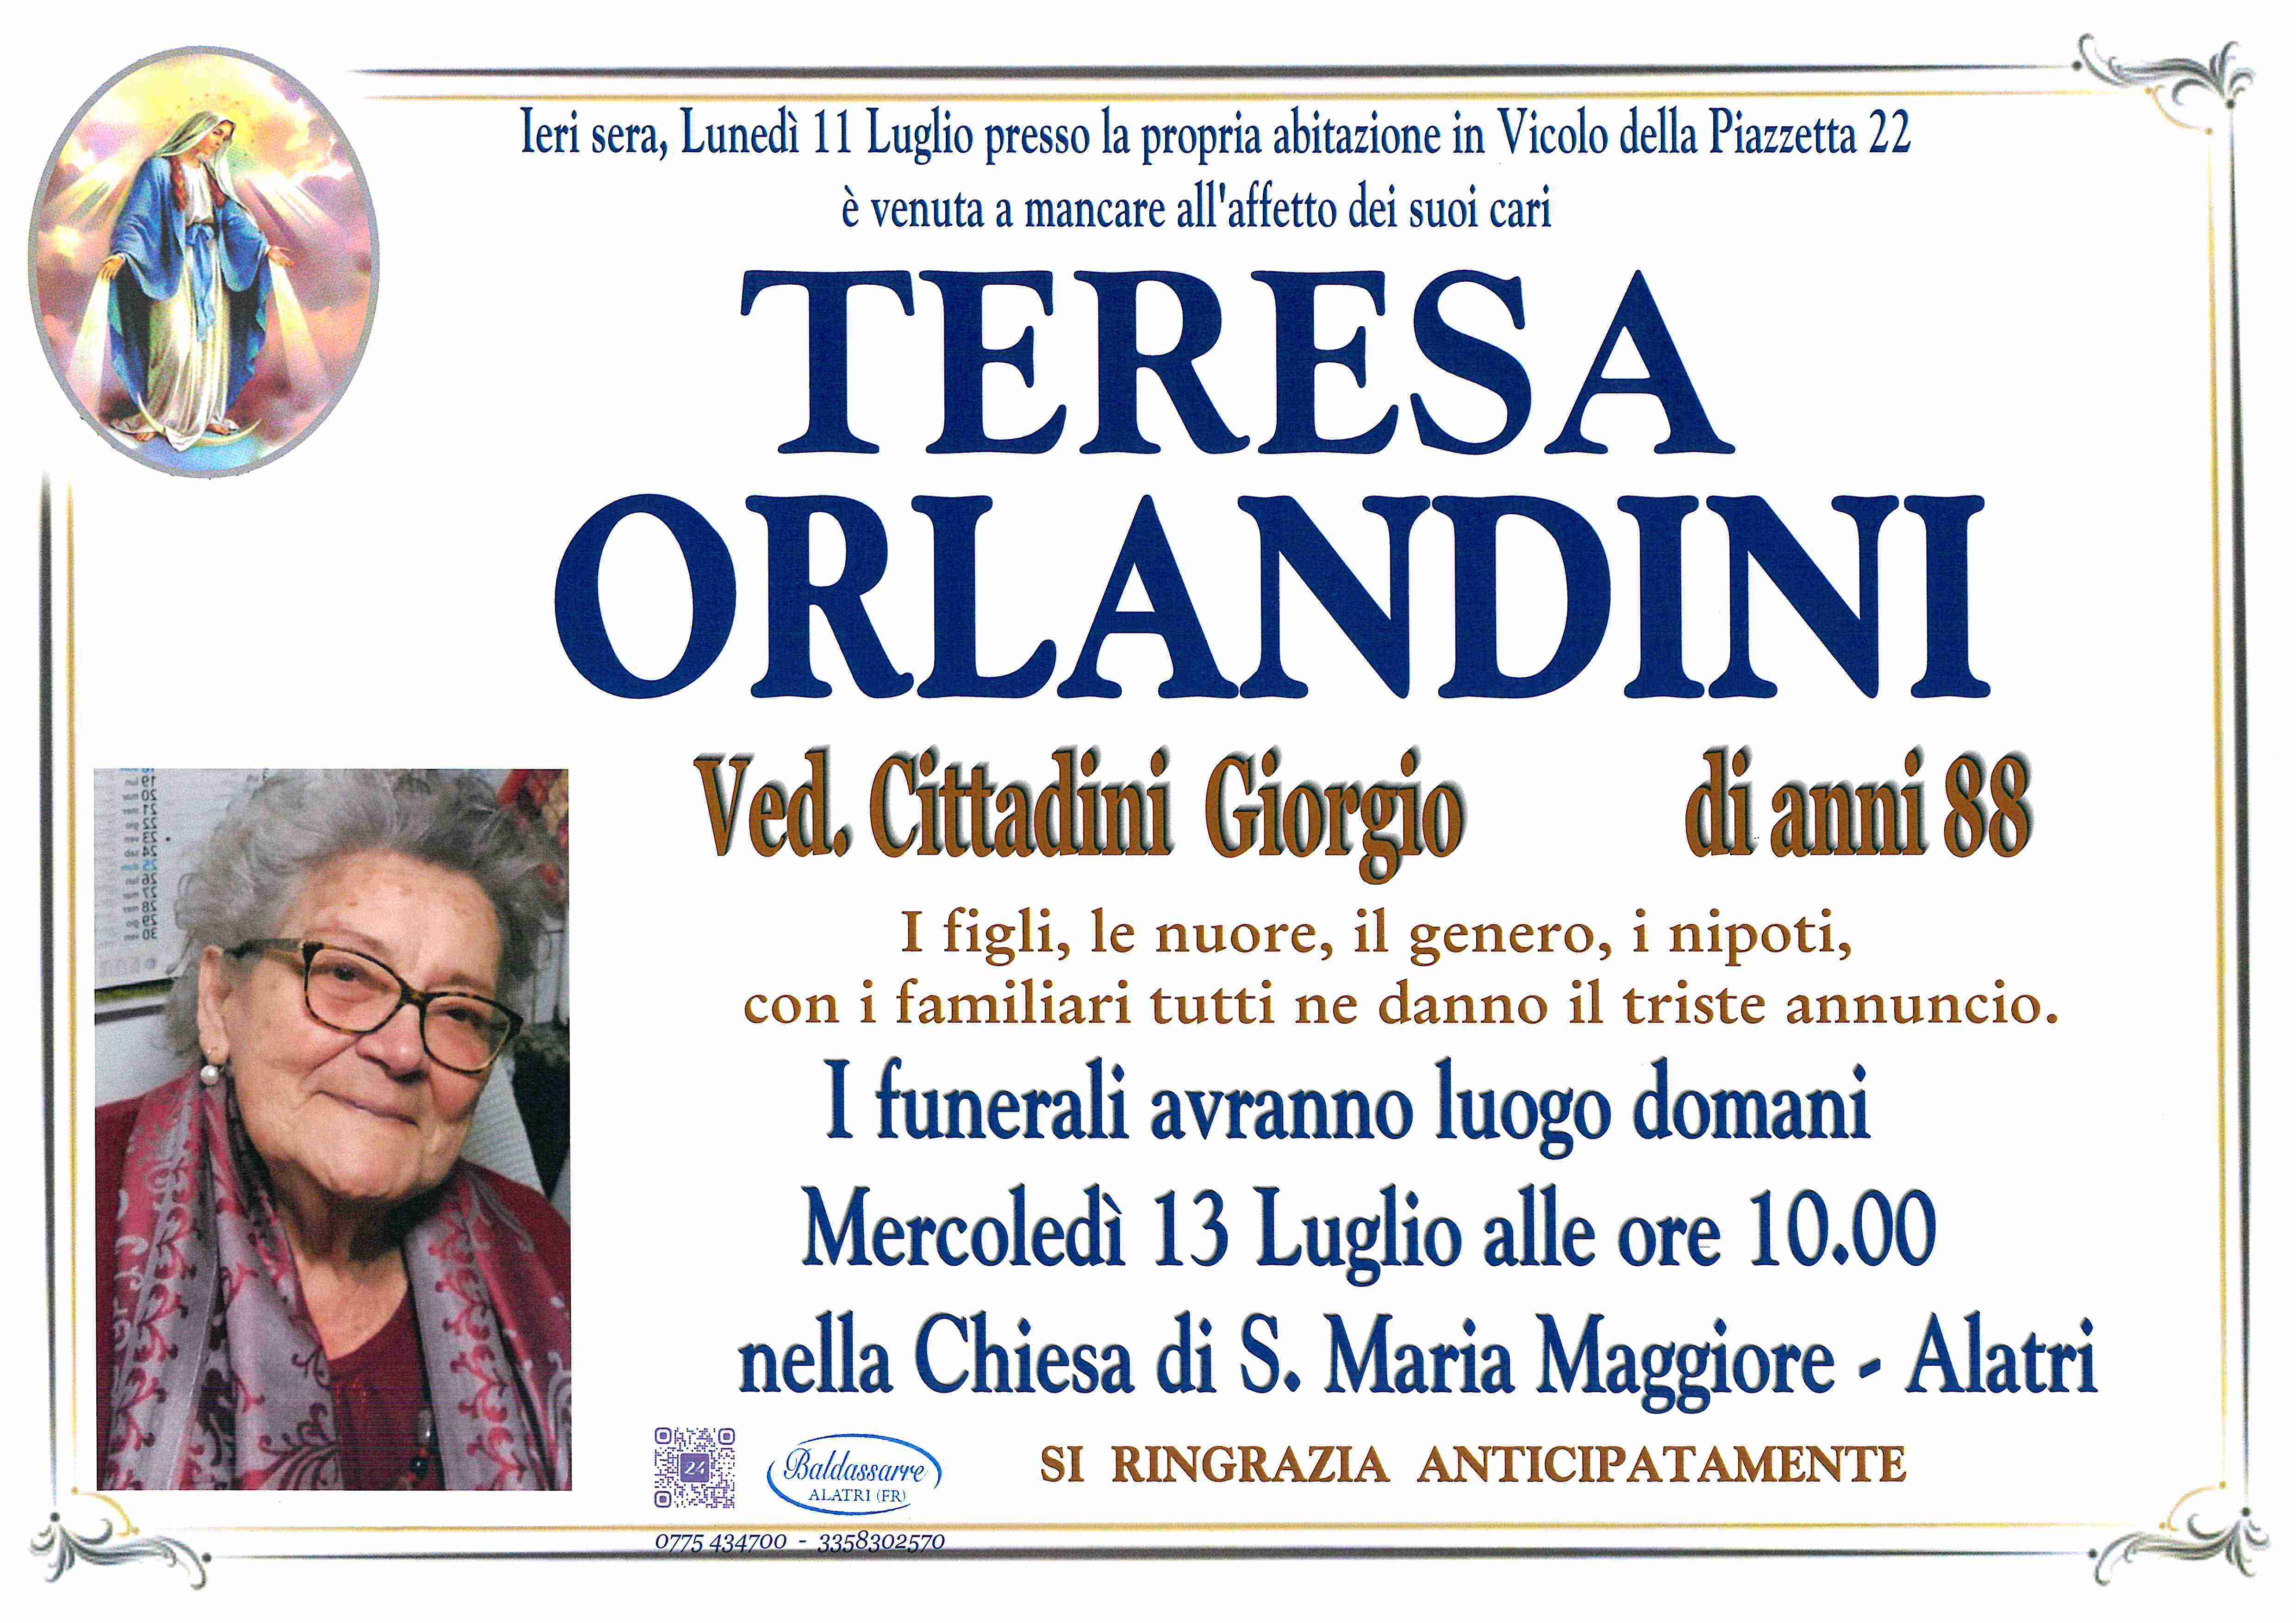 Teresa Orlandini